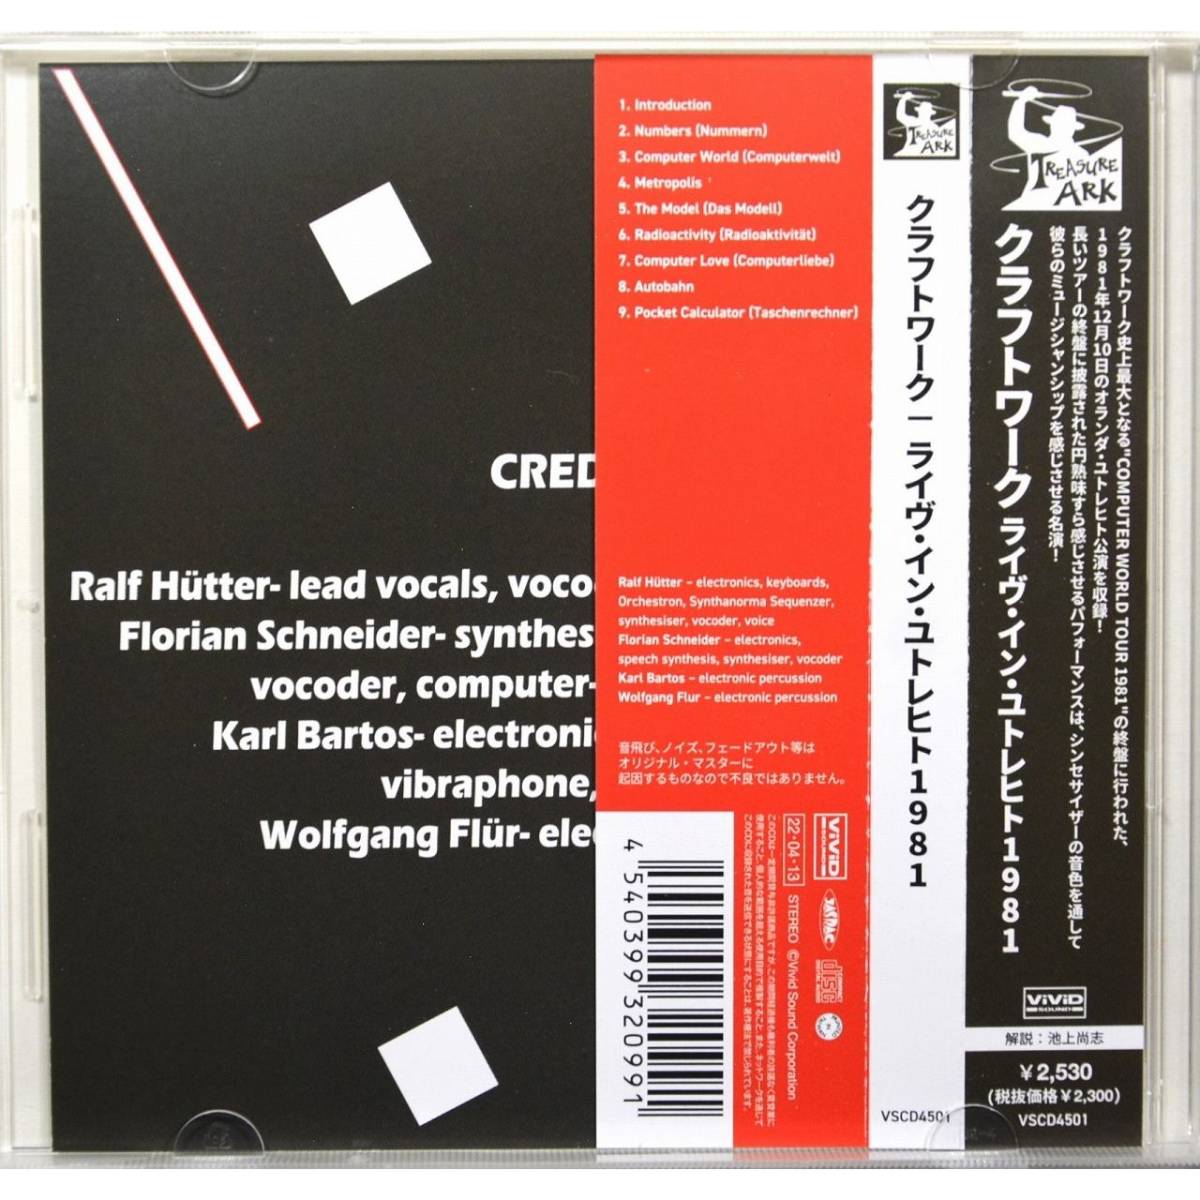 [Straight-music запись ]Kraftwerk / Live in Utrecht 1981 * craft Work / жить * in *yutorehito1981 * Computer World Tour1981*